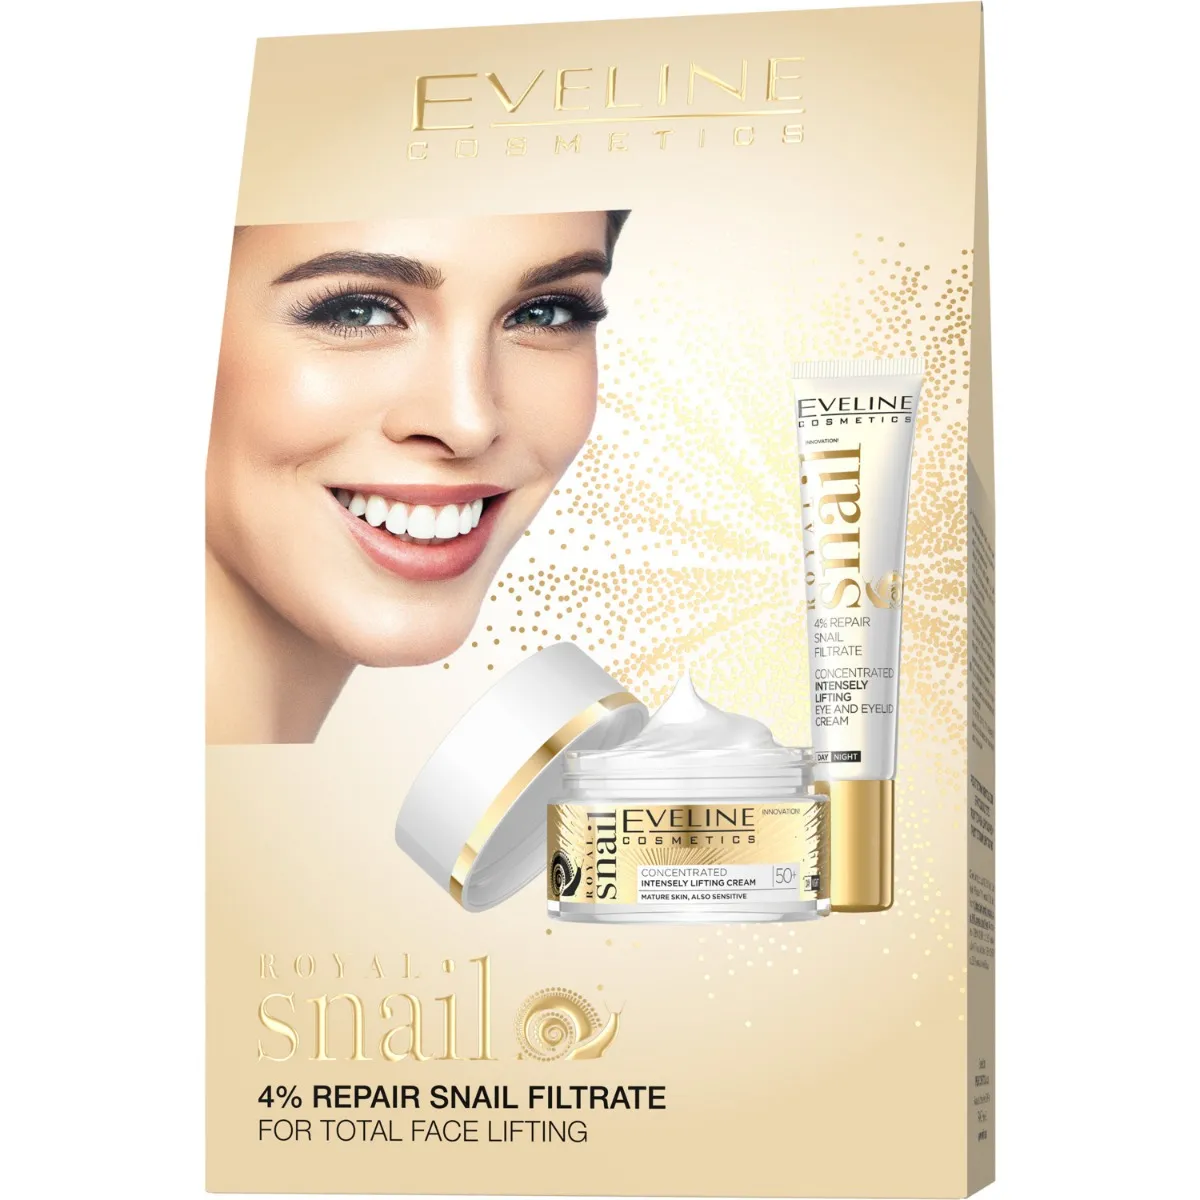 Eveline Cosmetics Royal Snail zestaw prezentowy, 50 ml + 20 ml